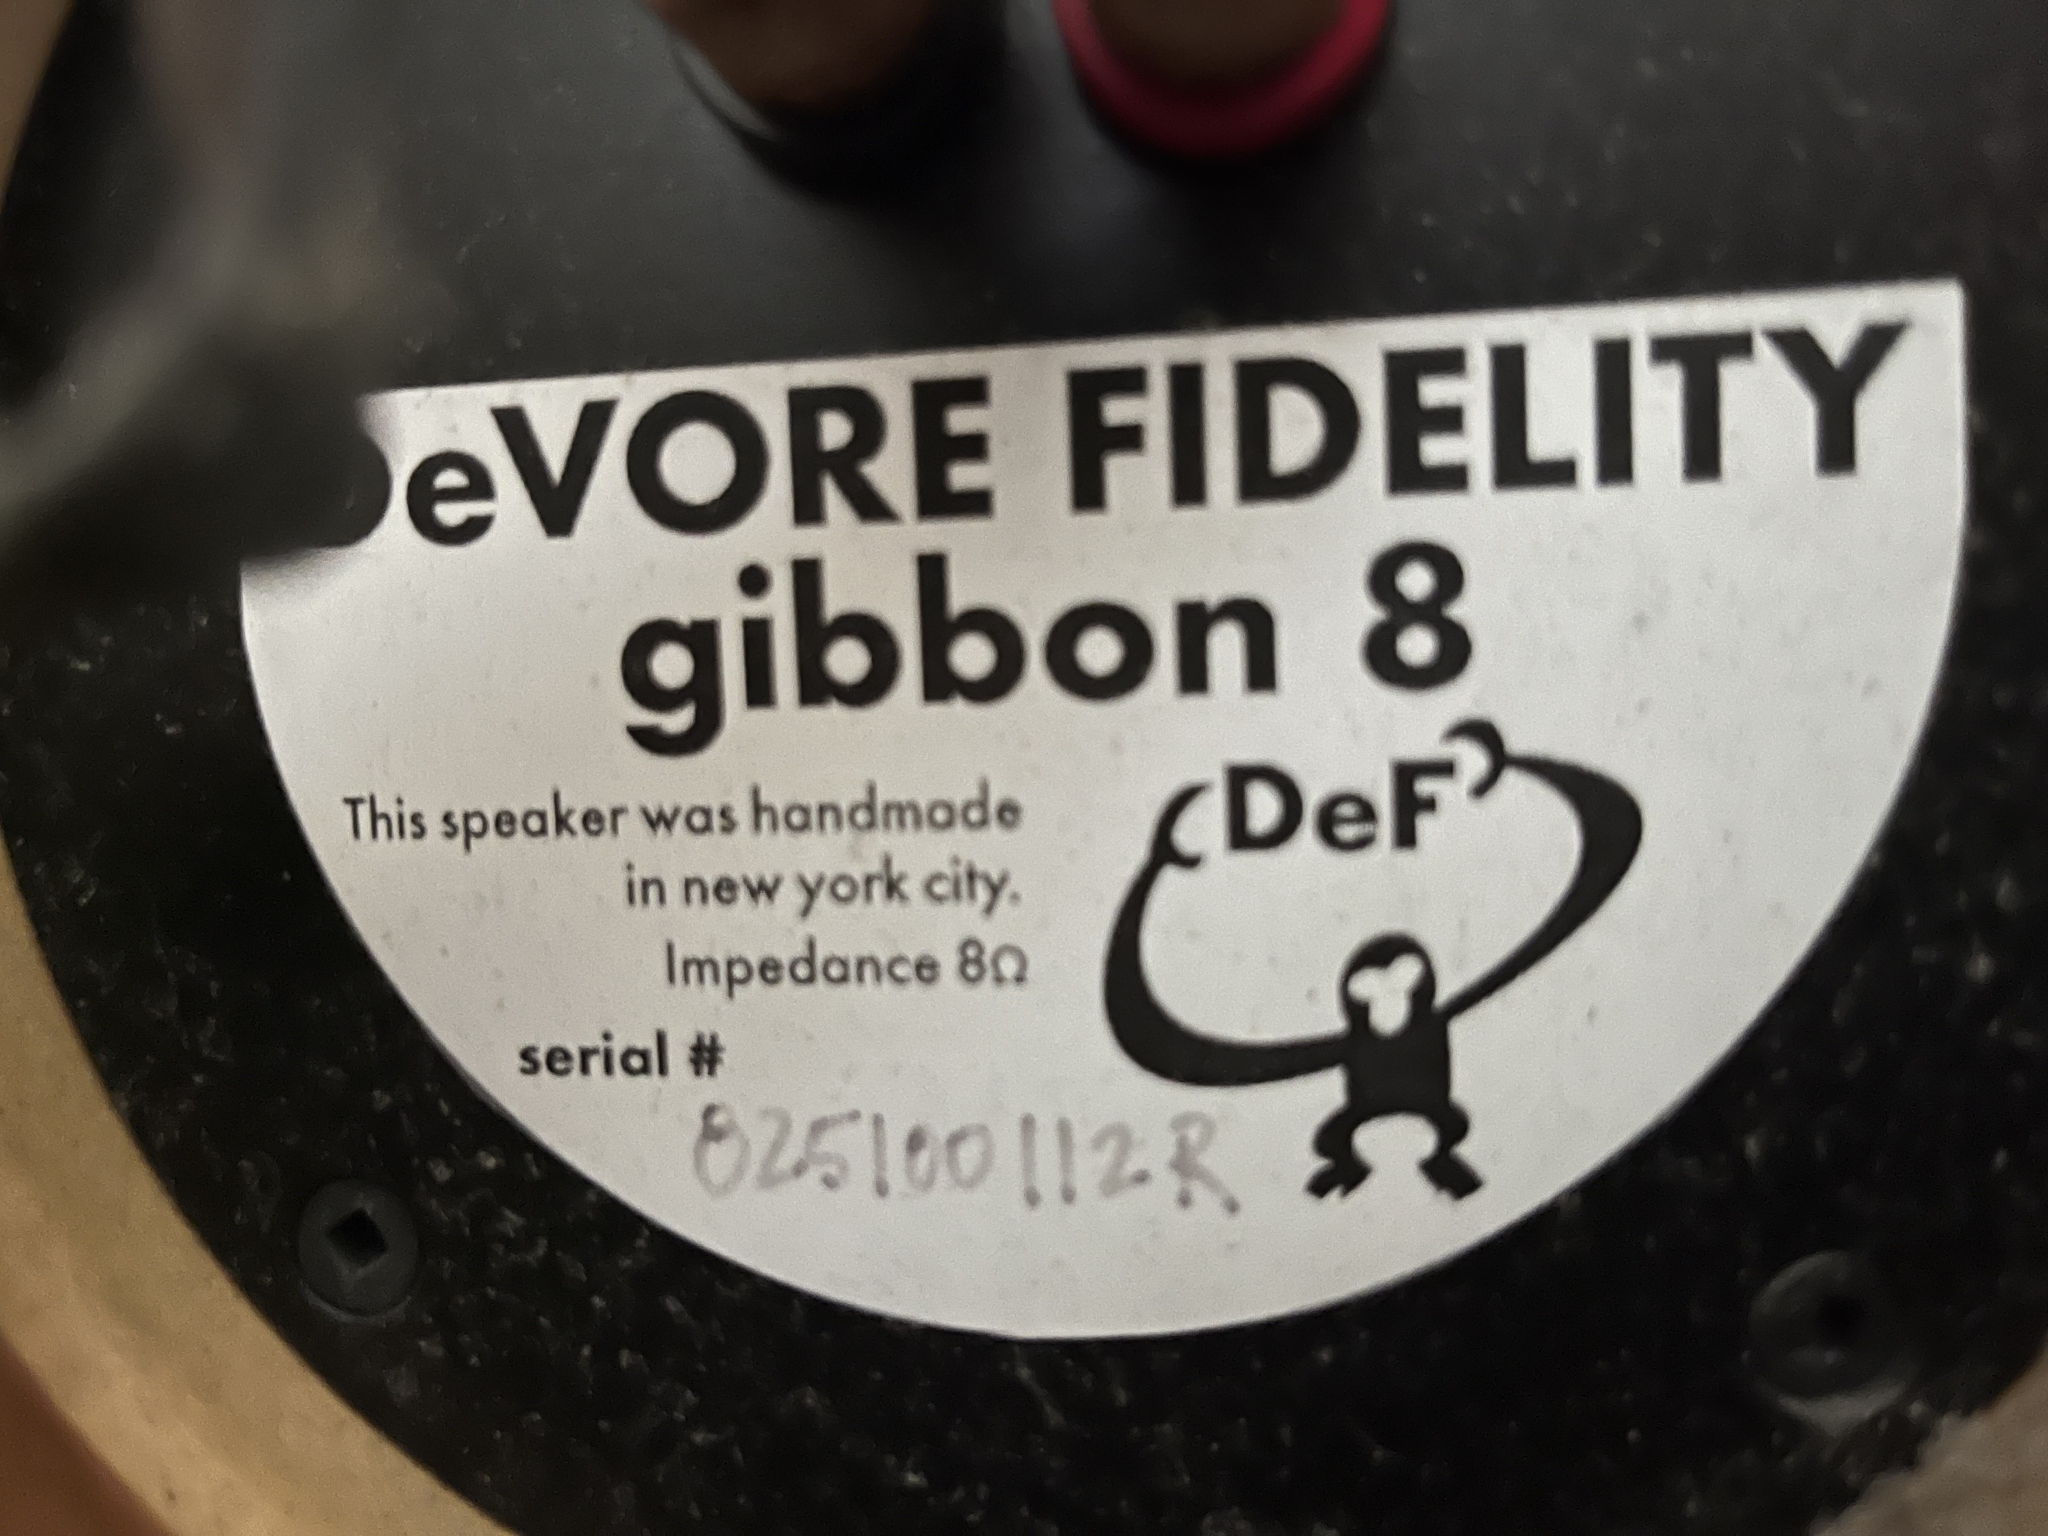 DeVore Fidelity Gibbon 8 3